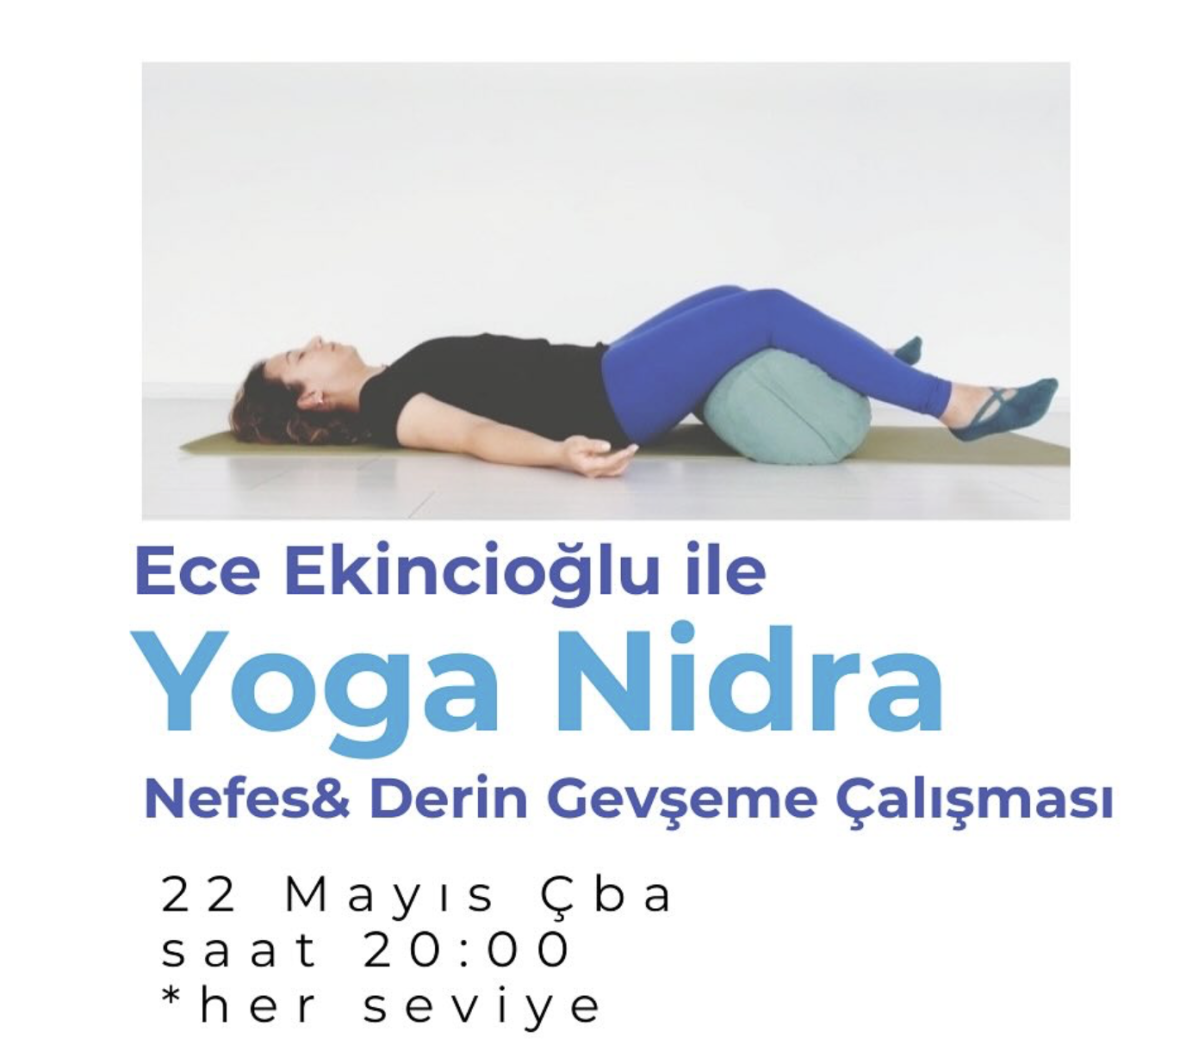 Yoga Nidra- Derin Gevşeme ve Nefes Çalışması - Online